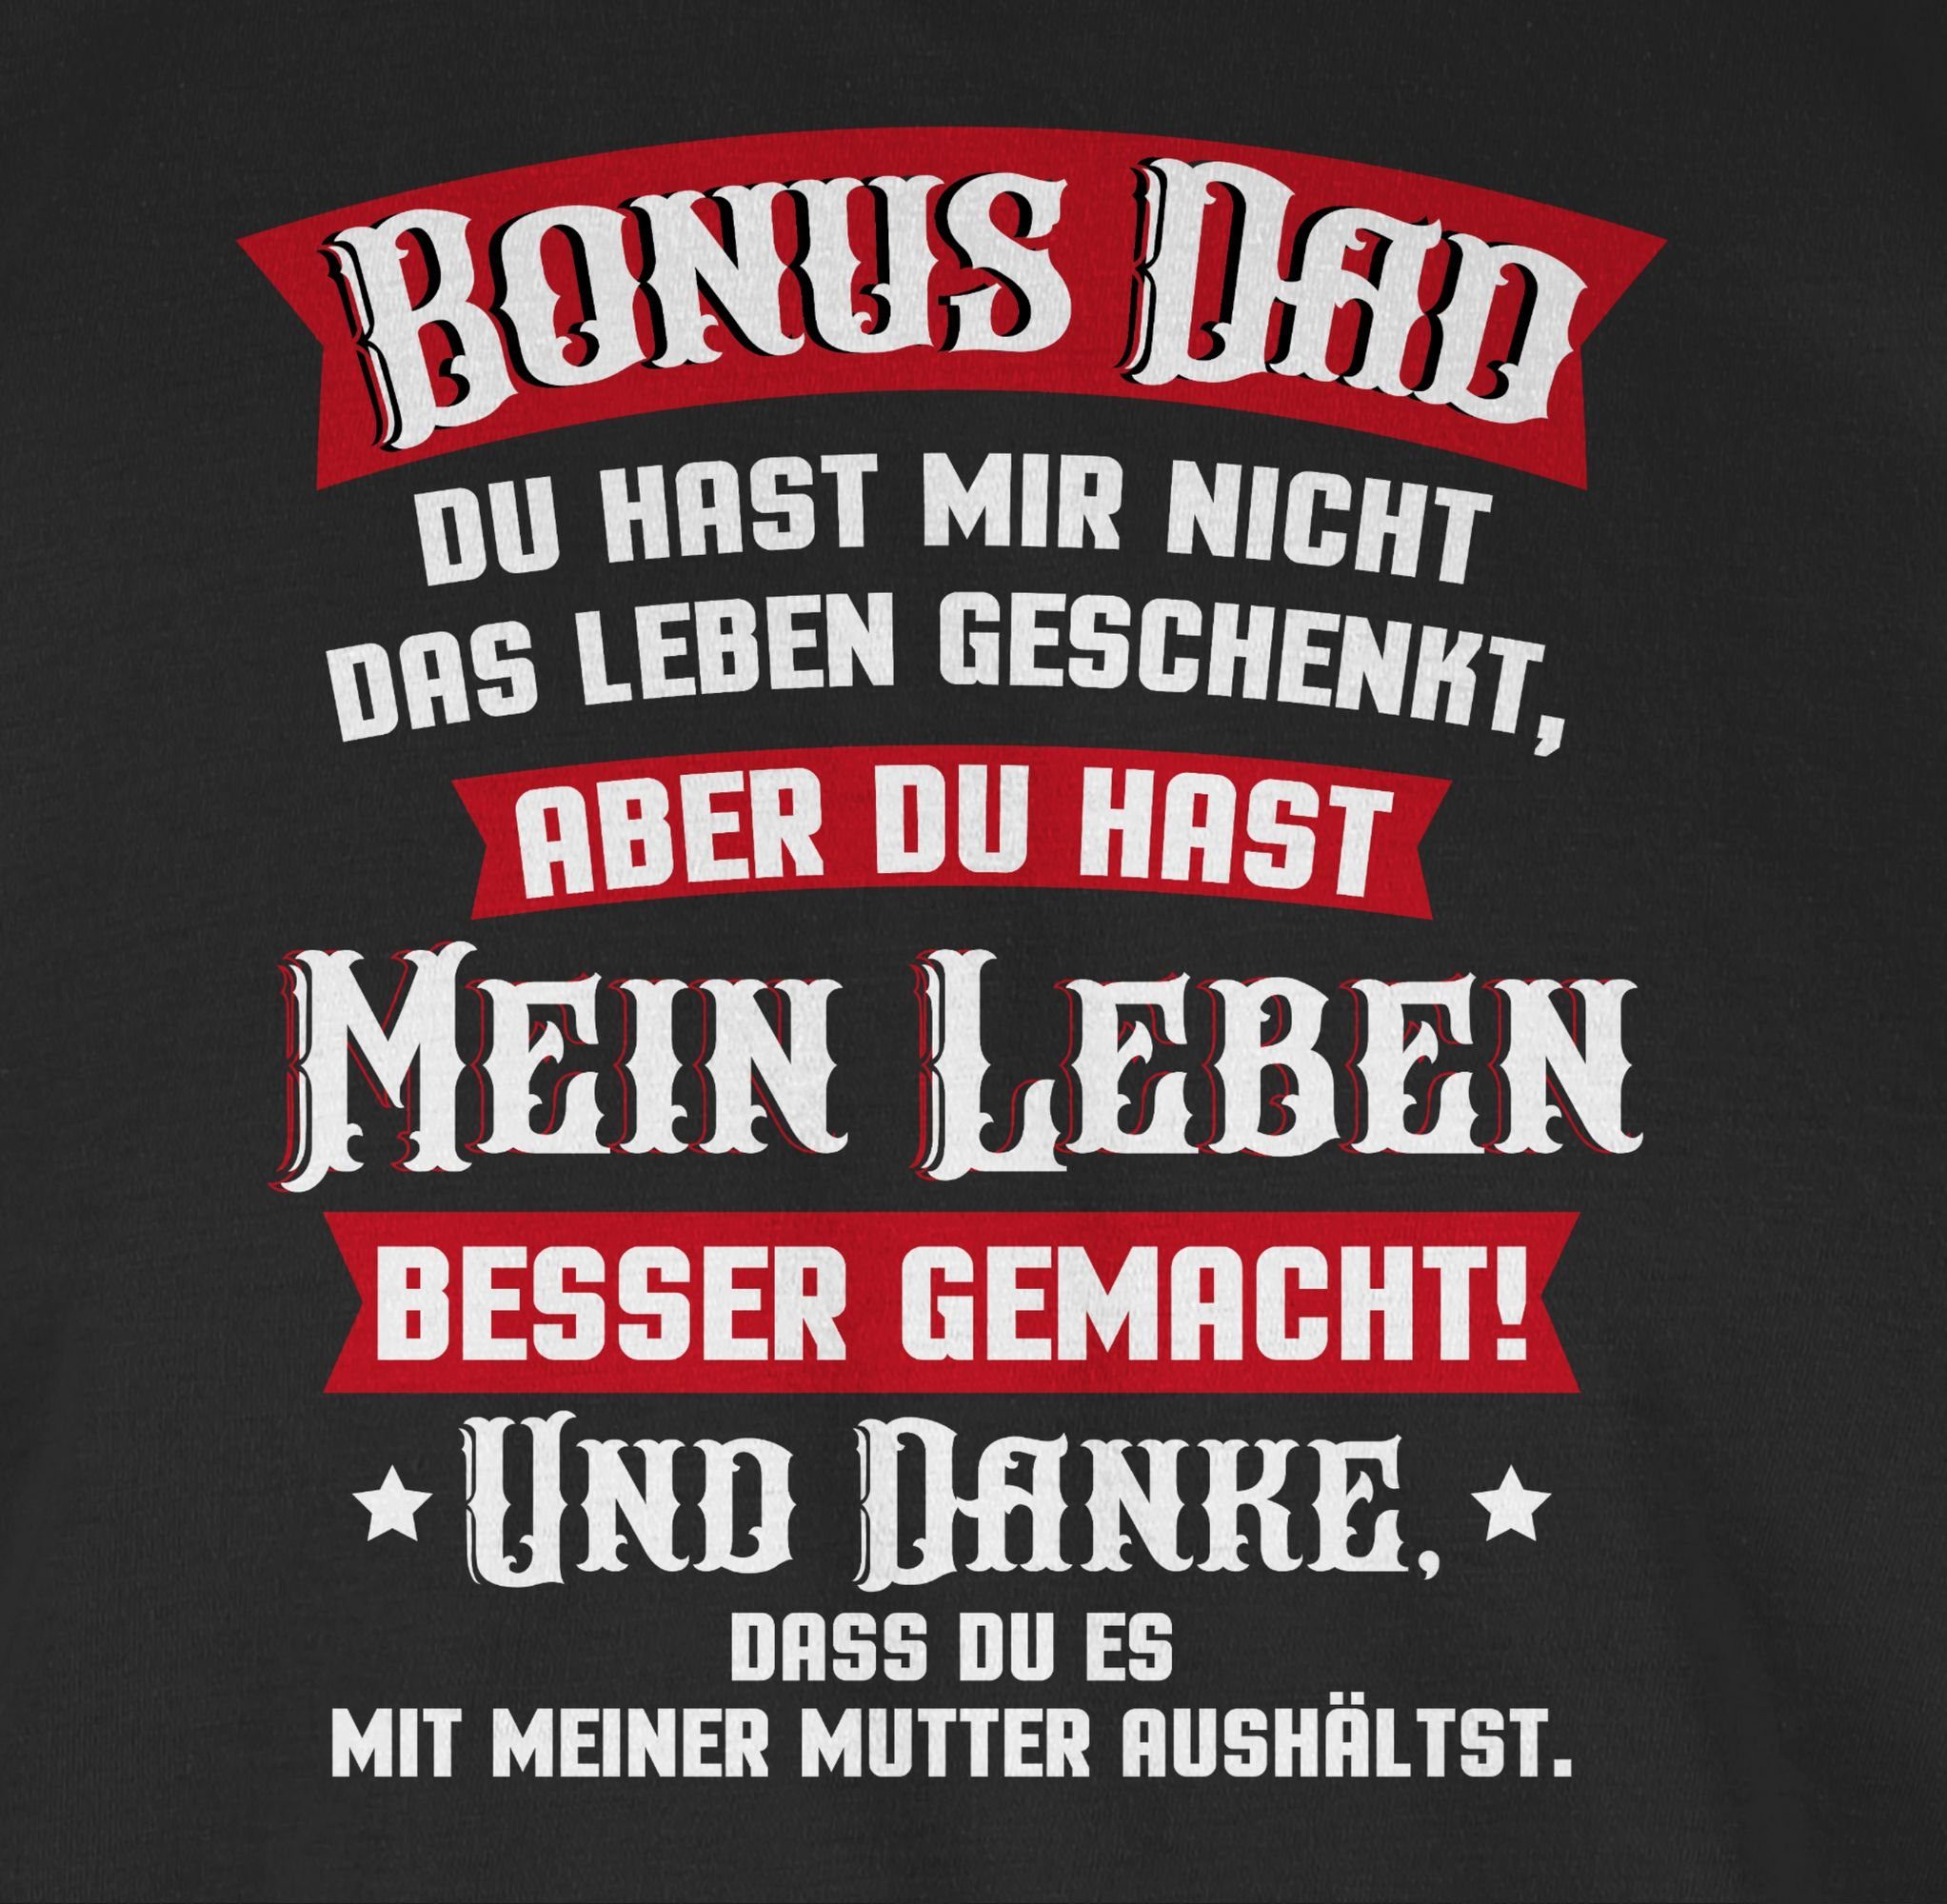 Shirtracer T-Shirt Bonus Dad Vatertag Schwarz Geschenk - 01 Papa rot/weiß für